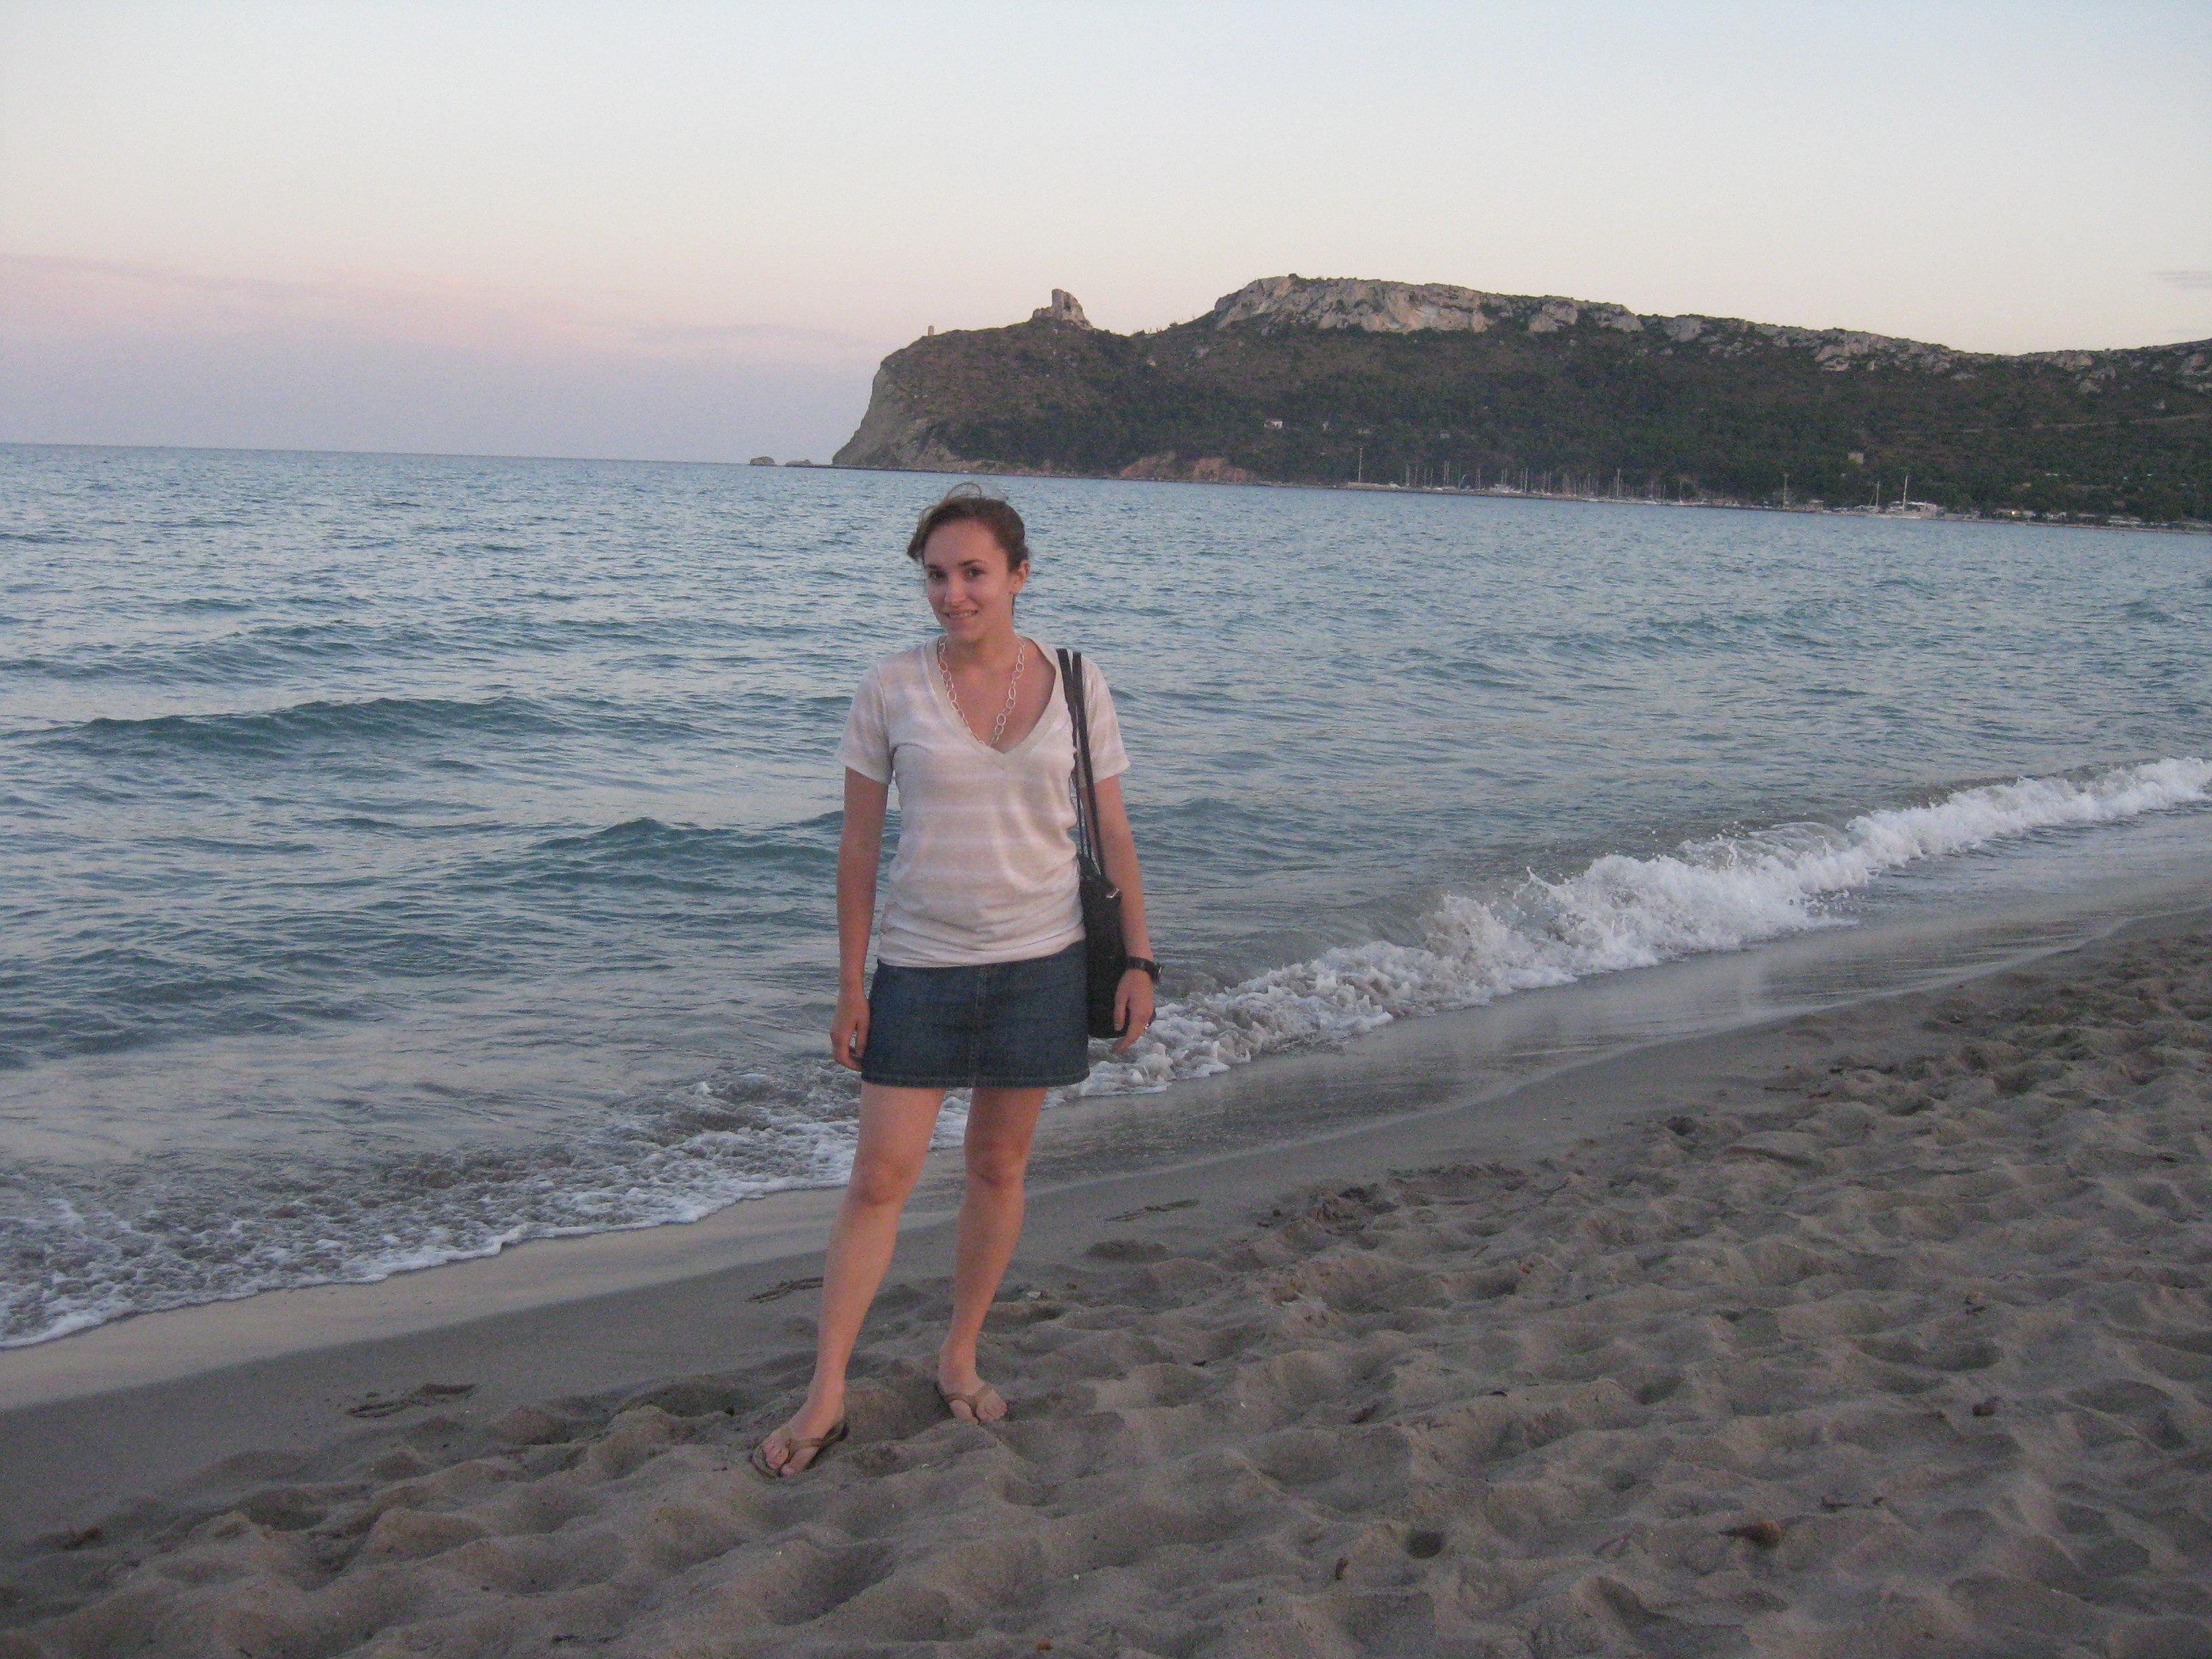 Il Poetto, the nearest beach to Cagliari